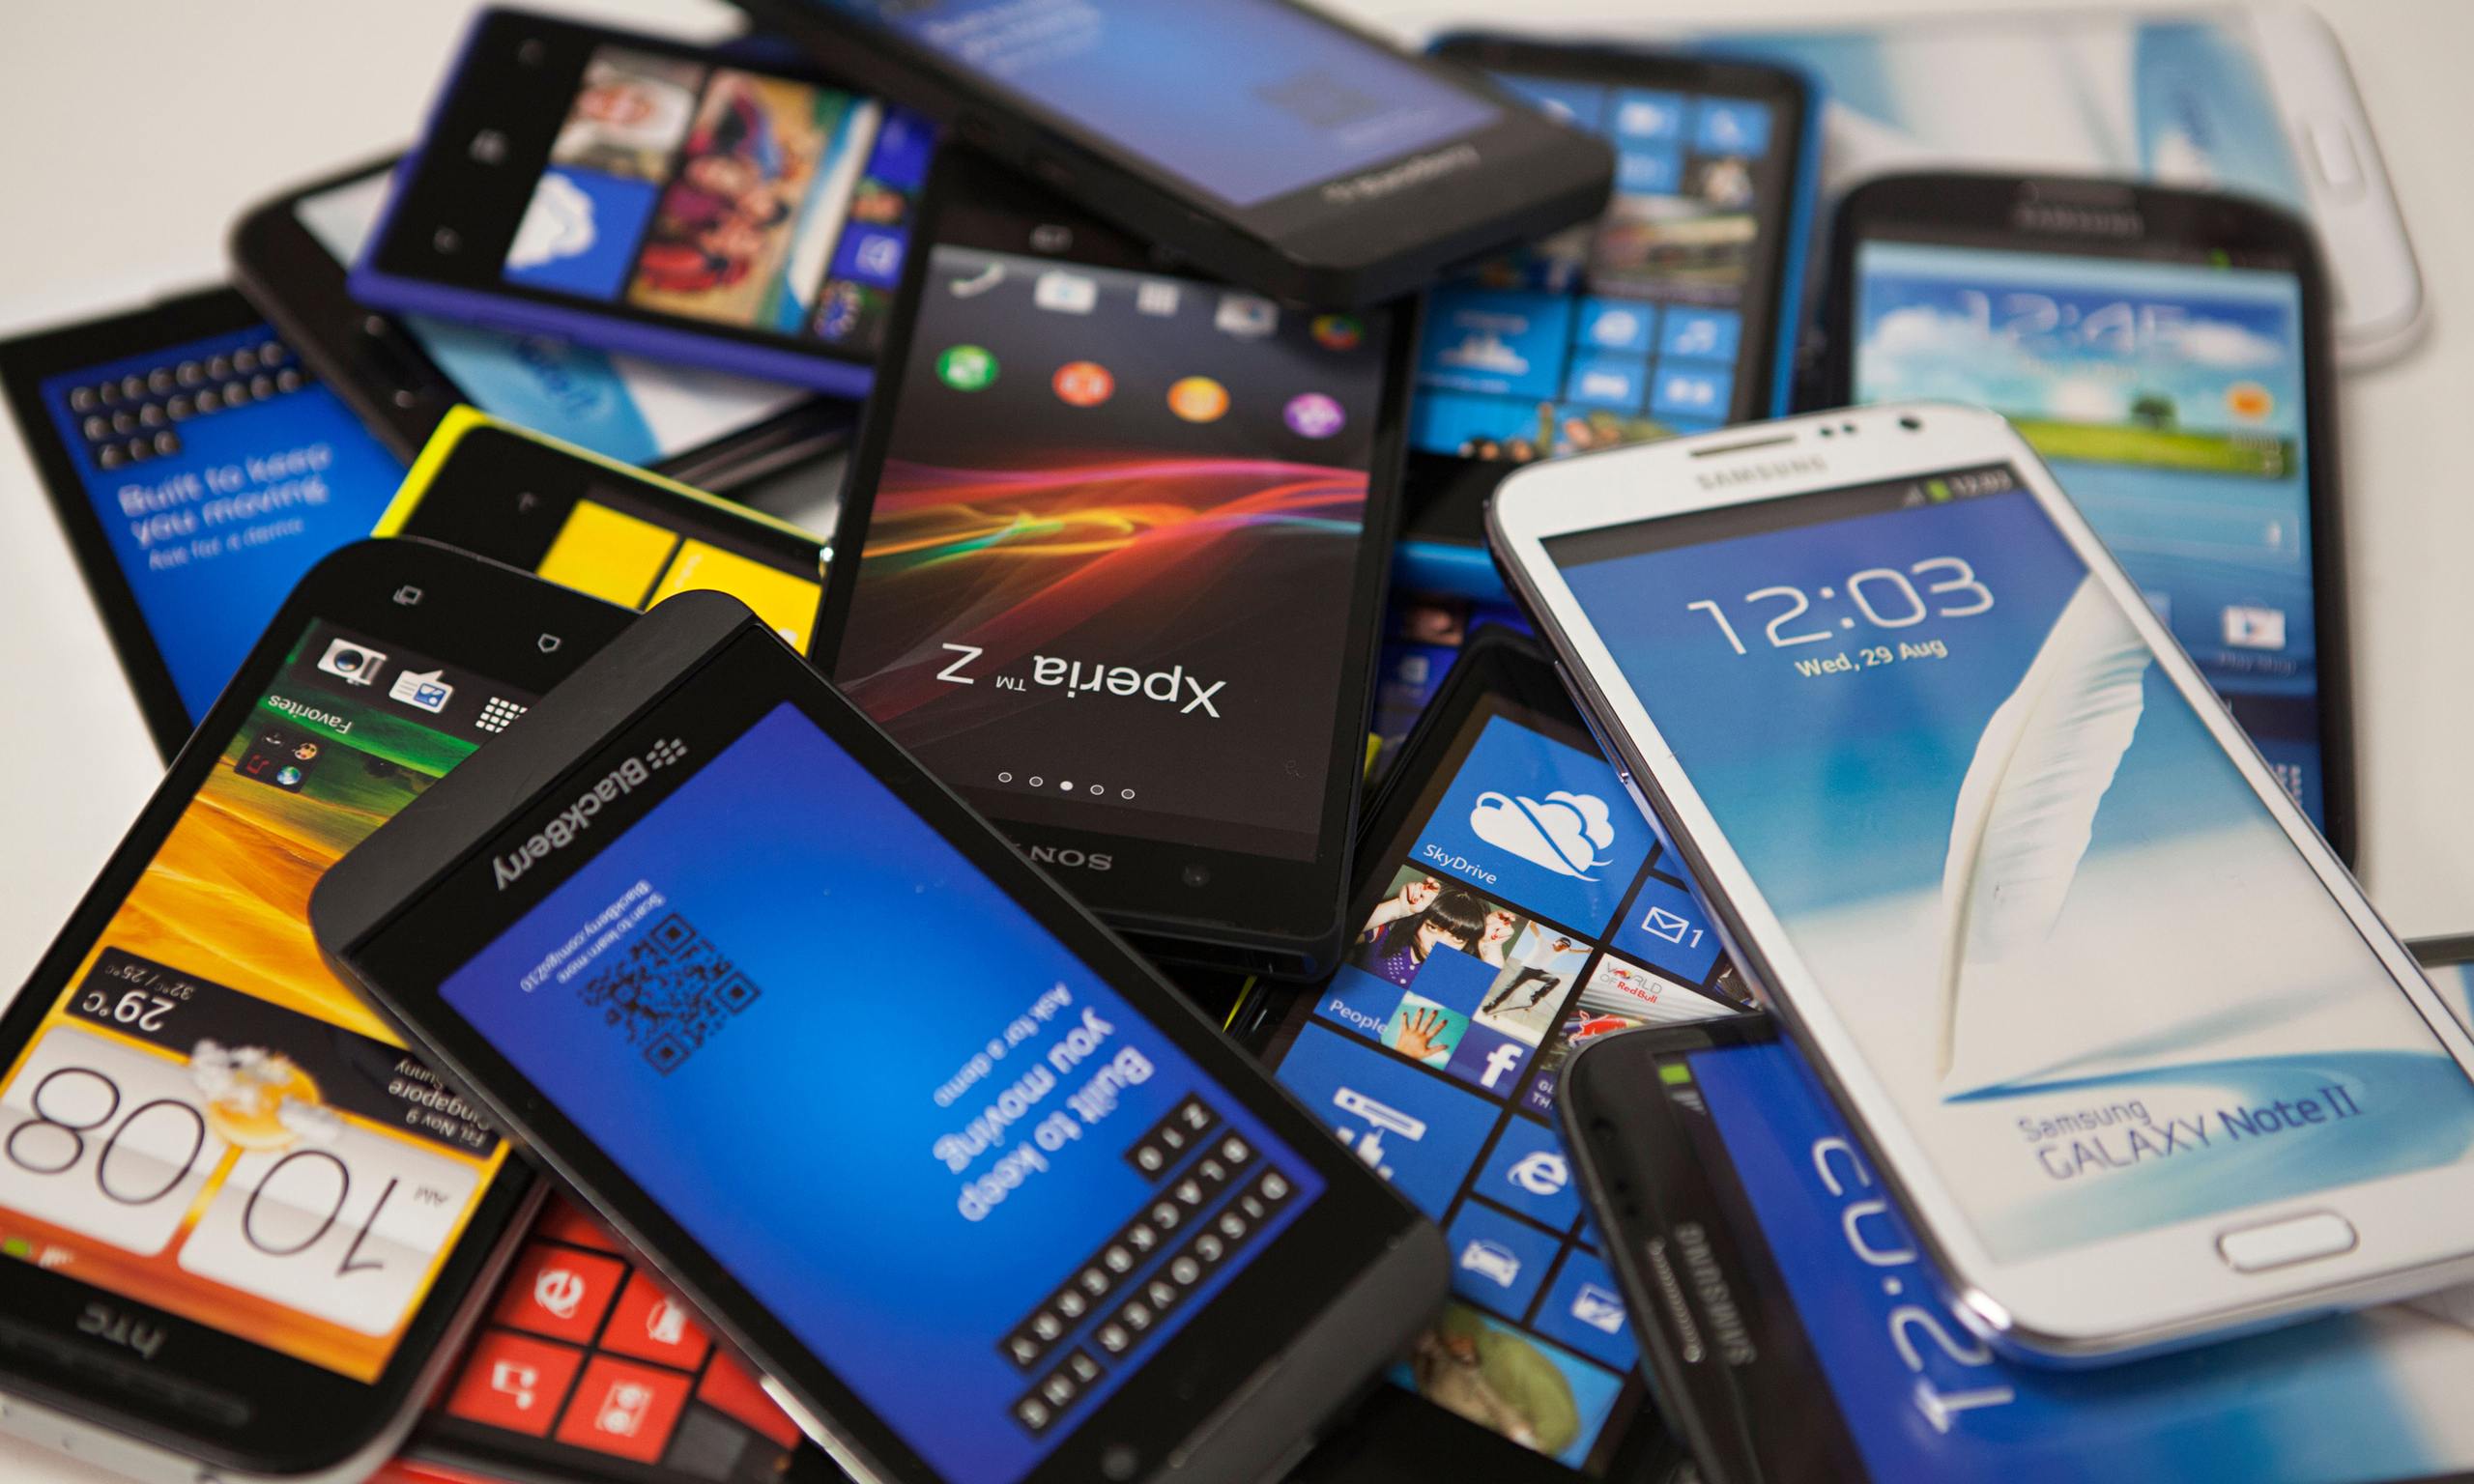 New-upcoming-smartphones-in-2015.jpg